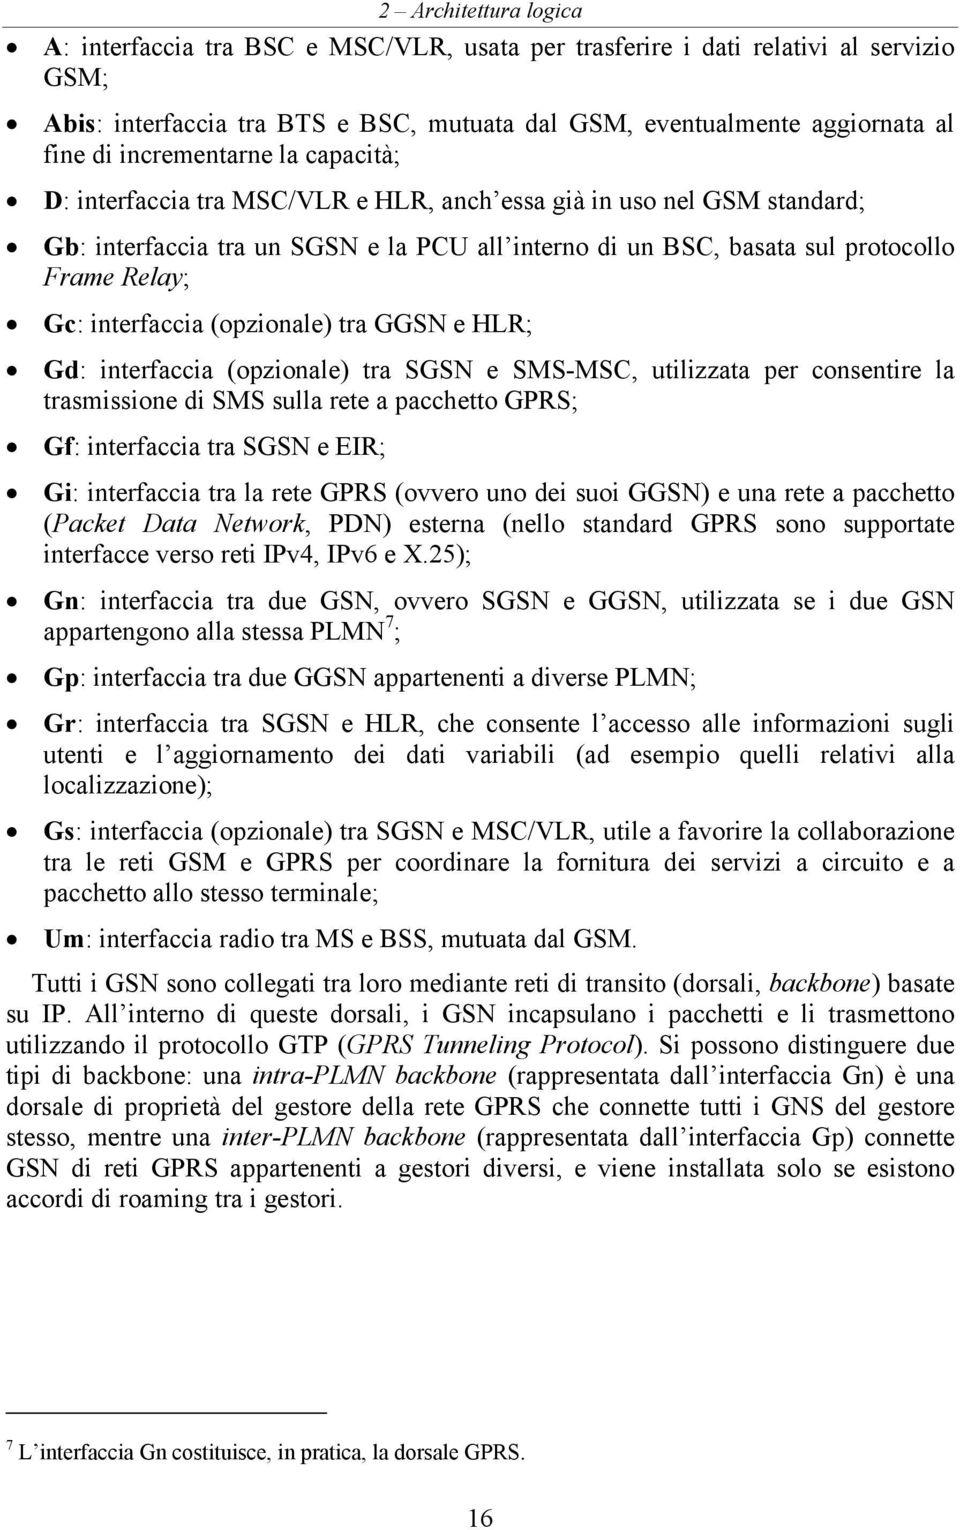 (opzionale) tra GGSN e HLR; Gd: interfaccia (opzionale) tra SGSN e SMS-MSC, utilizzata per consentire la trasmissione di SMS sulla rete a pacchetto GPRS; Gf: interfaccia tra SGSN e EIR; Gi: